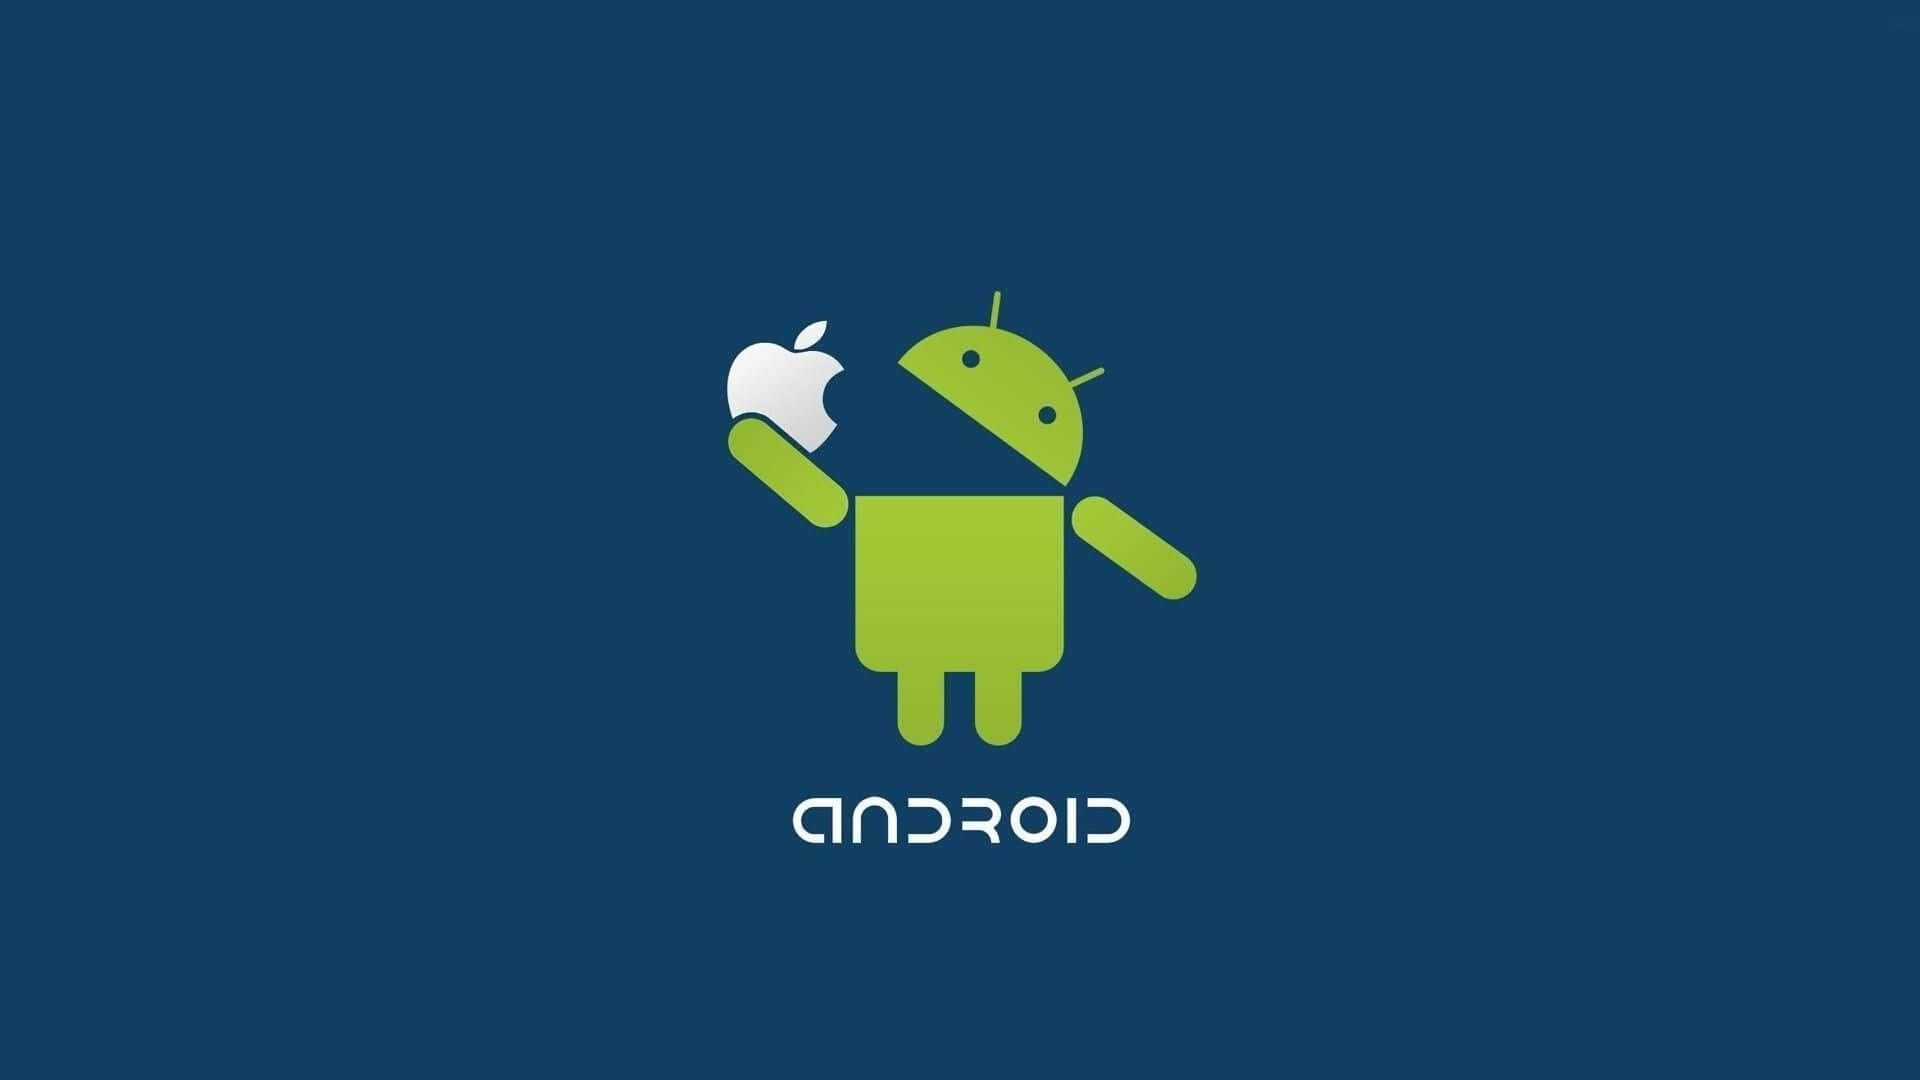 Appleisst Android Dunkelblau Wallpaper